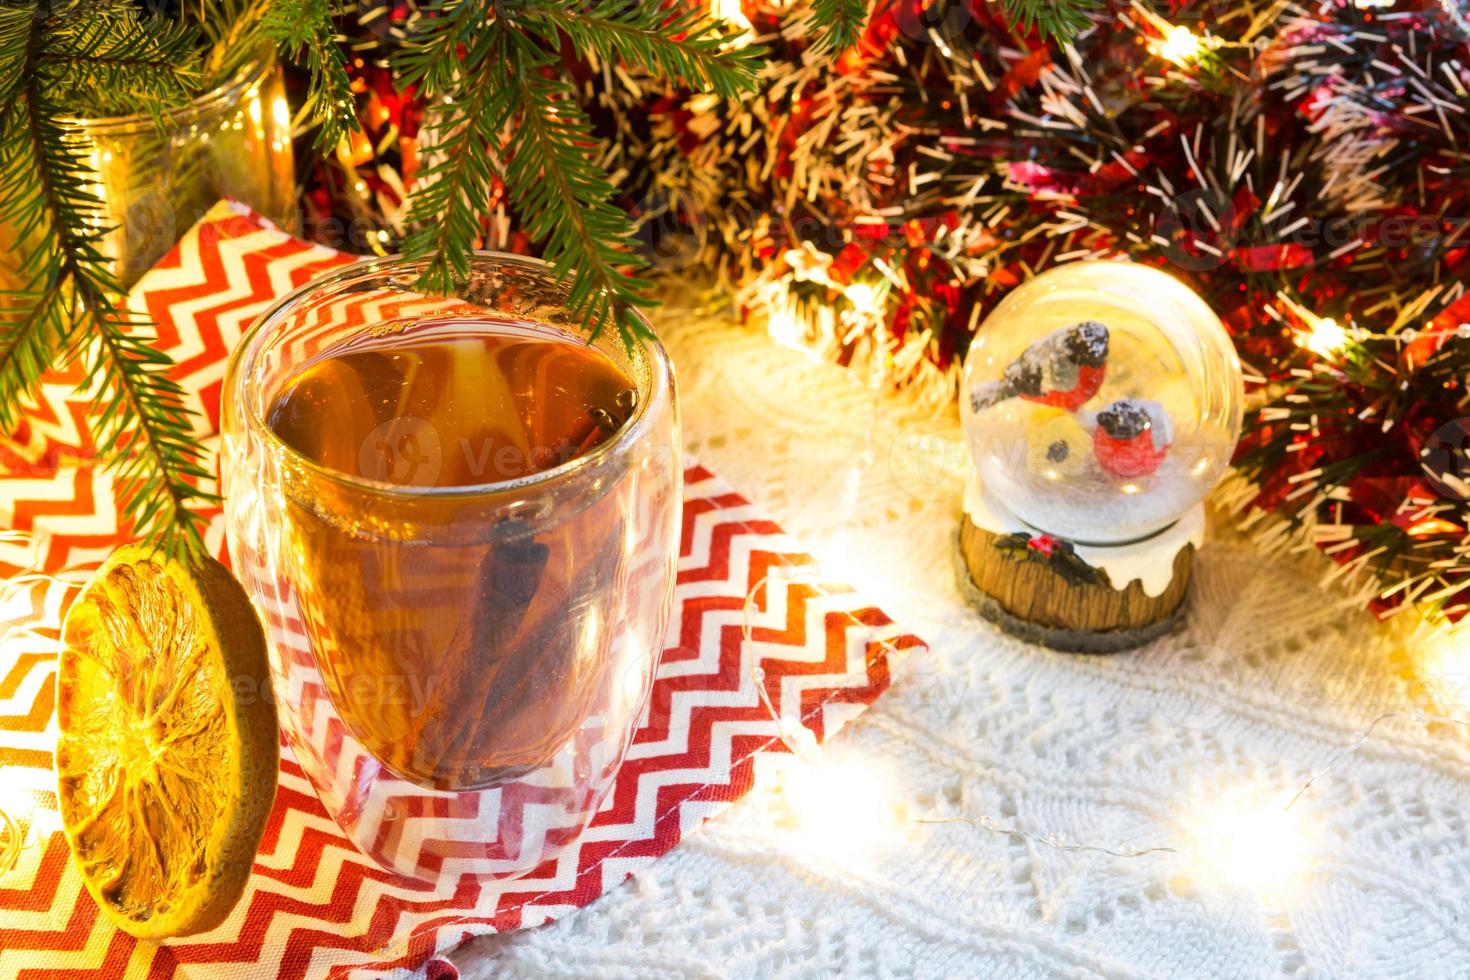 copo de vidro transparente de parede dupla com chá quente e paus de canela na mesa com decoração de natal. atmosfera de ano novo, fatia de laranja seca, guirlanda e enfeites, globo de neve com bullfinches foto